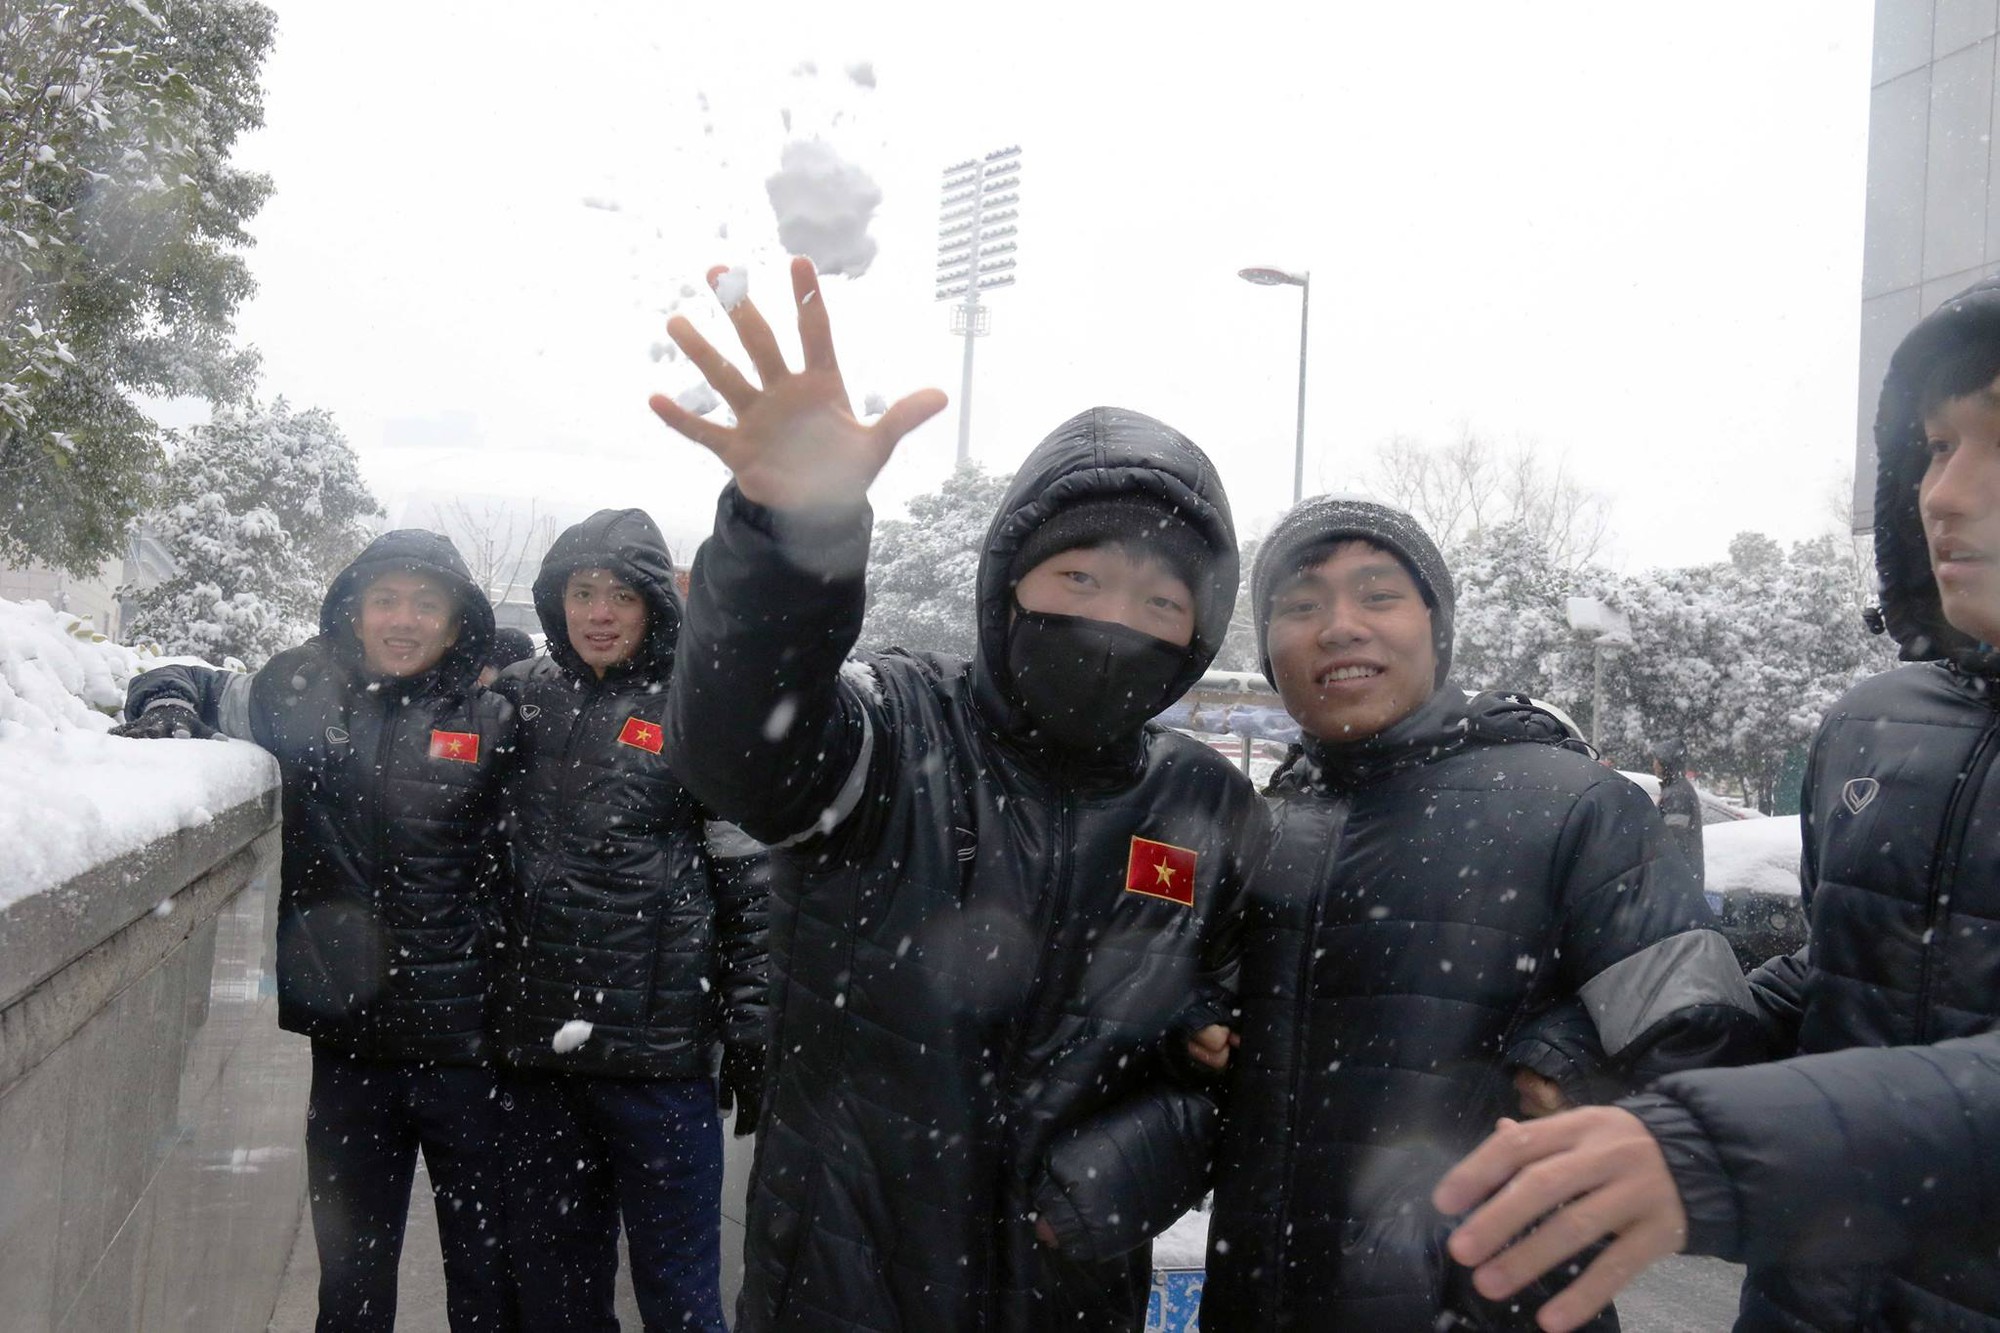 Đội trưởng Lương Xuân Trường ném tuyết vào máy ảnh trong phút đùa vui. Không phải cầu thủ U23 VN nào cũng có cơ hội thấy tuyết như Xuân Trường hồi còn thi đấu tại Hàn Quốc. Ảnh: VFF.